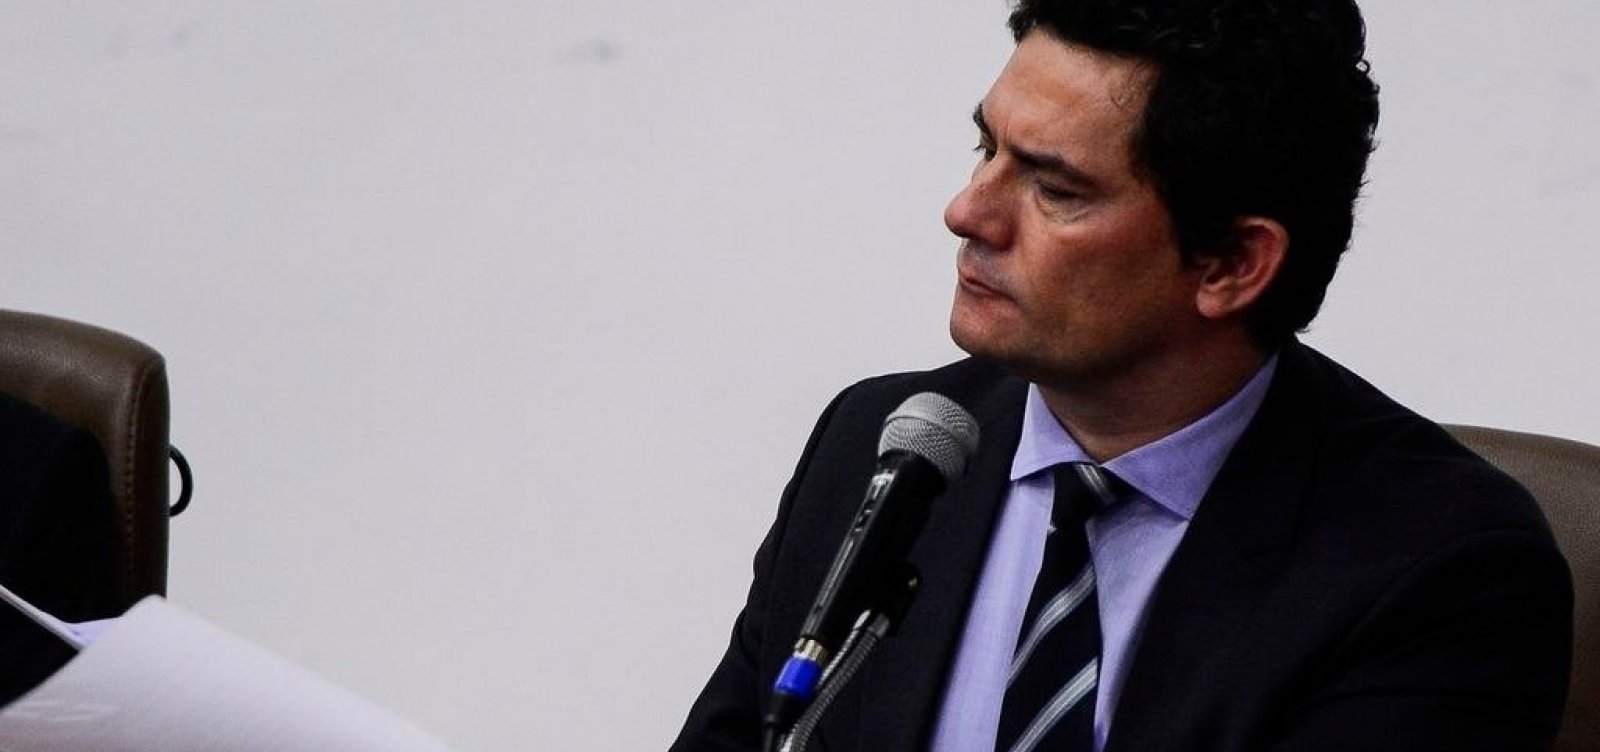 Confira a íntegra do depoimento do ex-ministro Sergio Moro à Polícia Federal